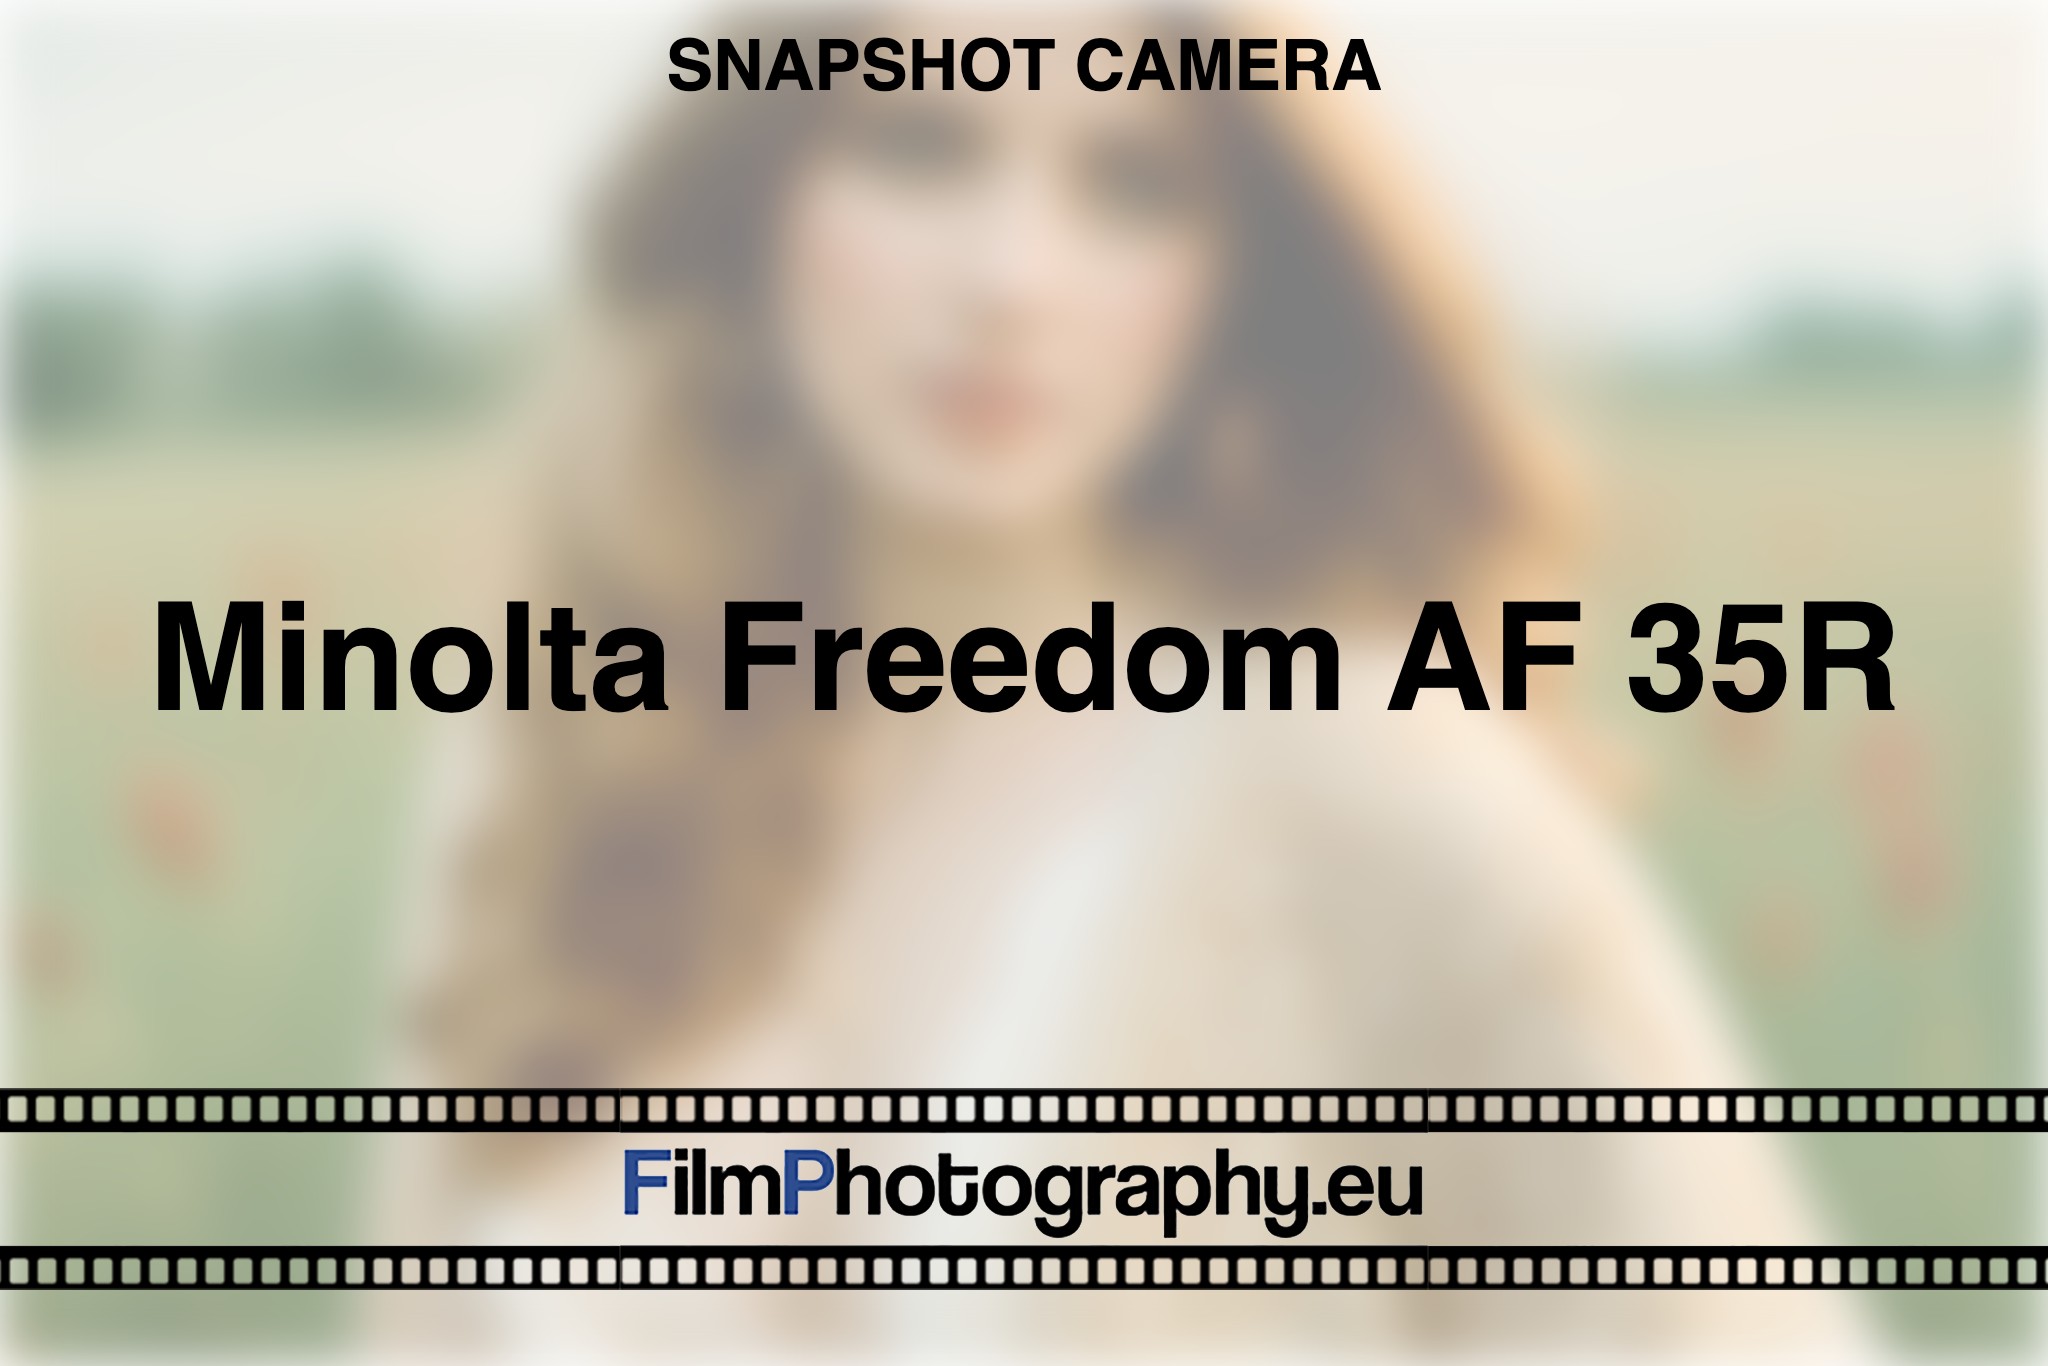 minolta-freedom-af-35r-snapshot-camera-bnv